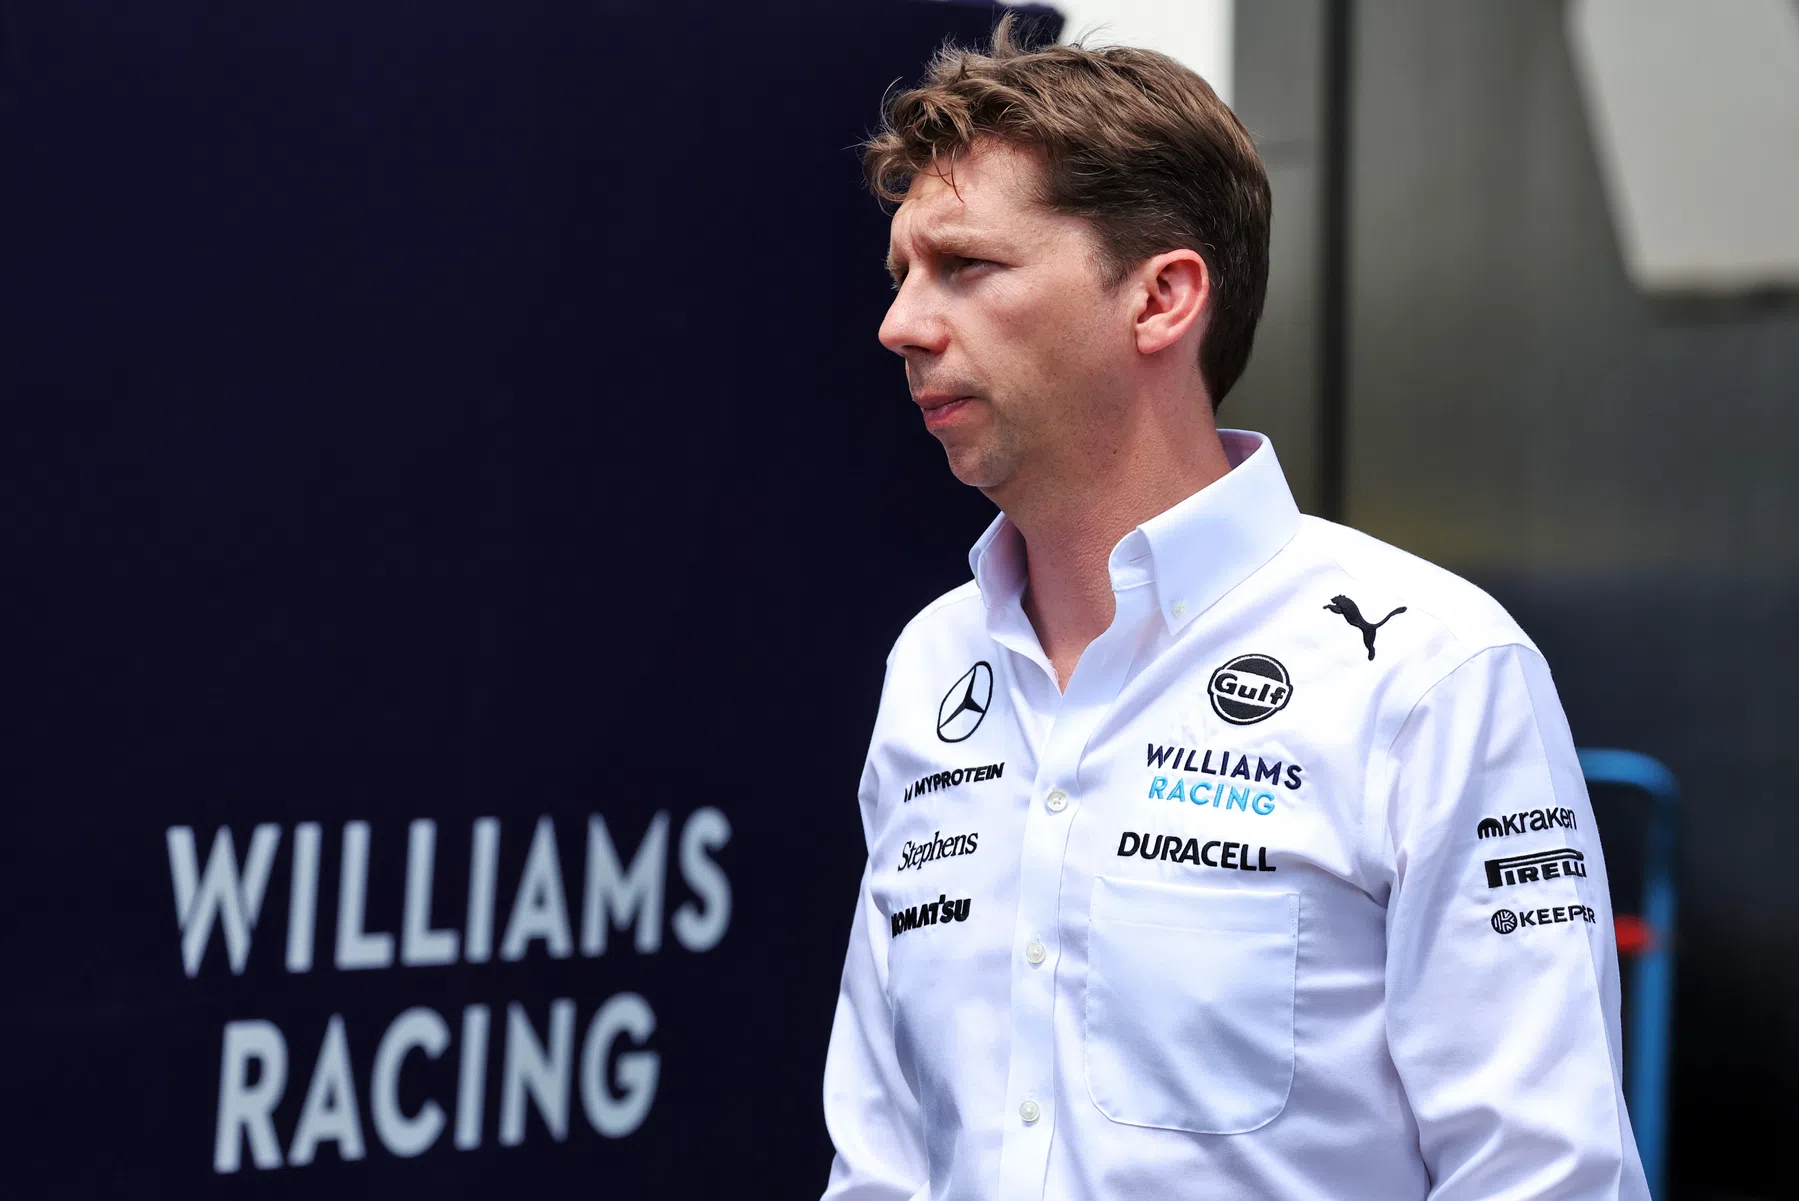 La Williams annuncia il prelievo di nuove figure tecniche dalle squadre rivali